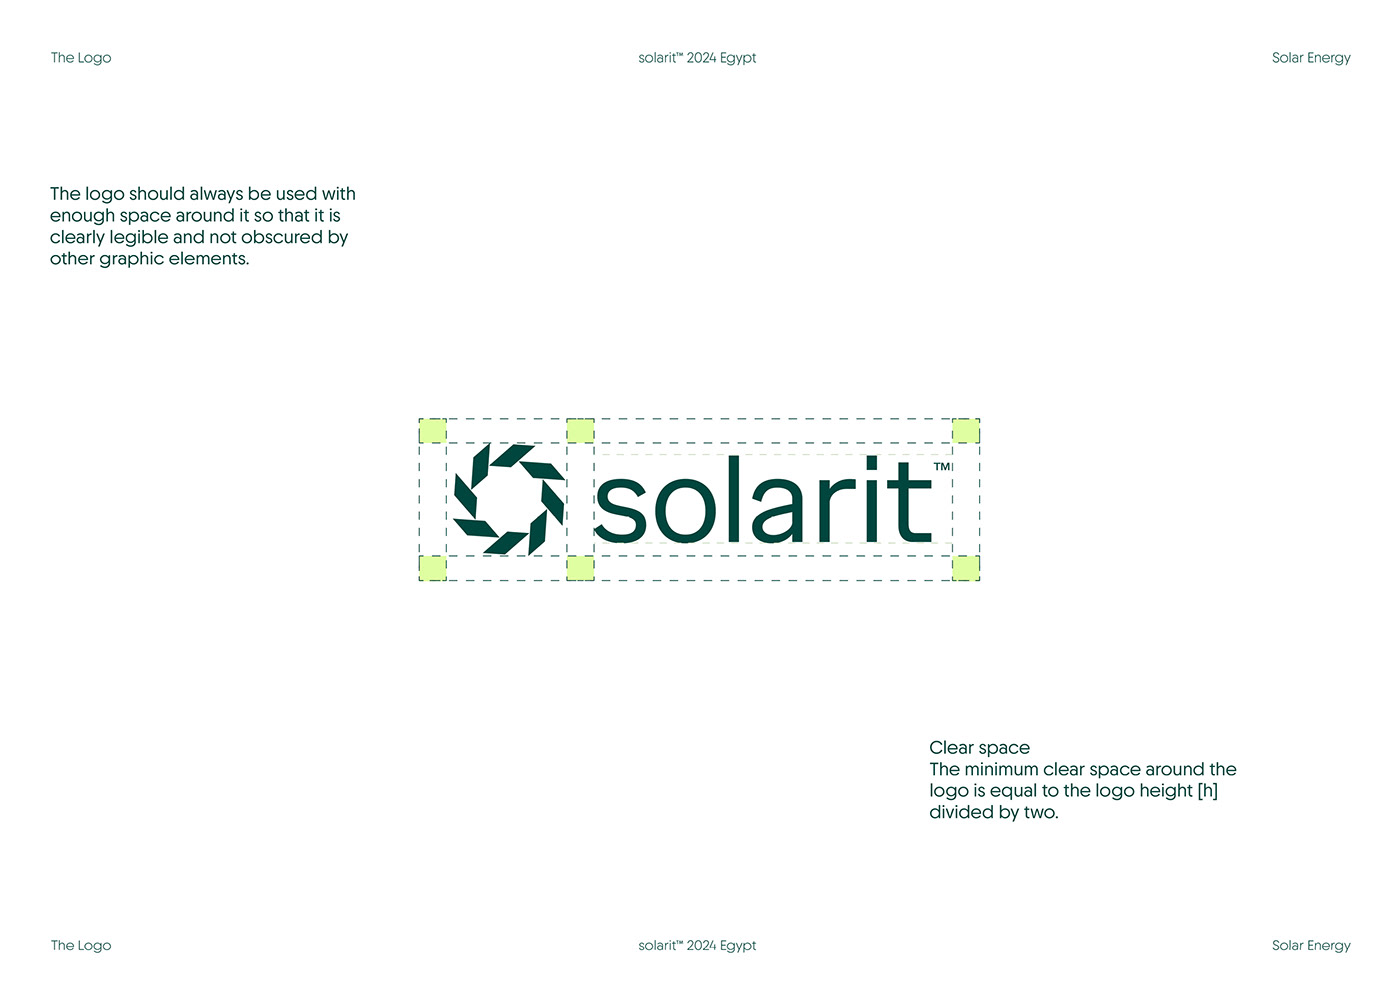 Solar energy Solar Branding Logo Design visual identity Branding Identity adobe stock logo brand identity stationery design Corporate Identity